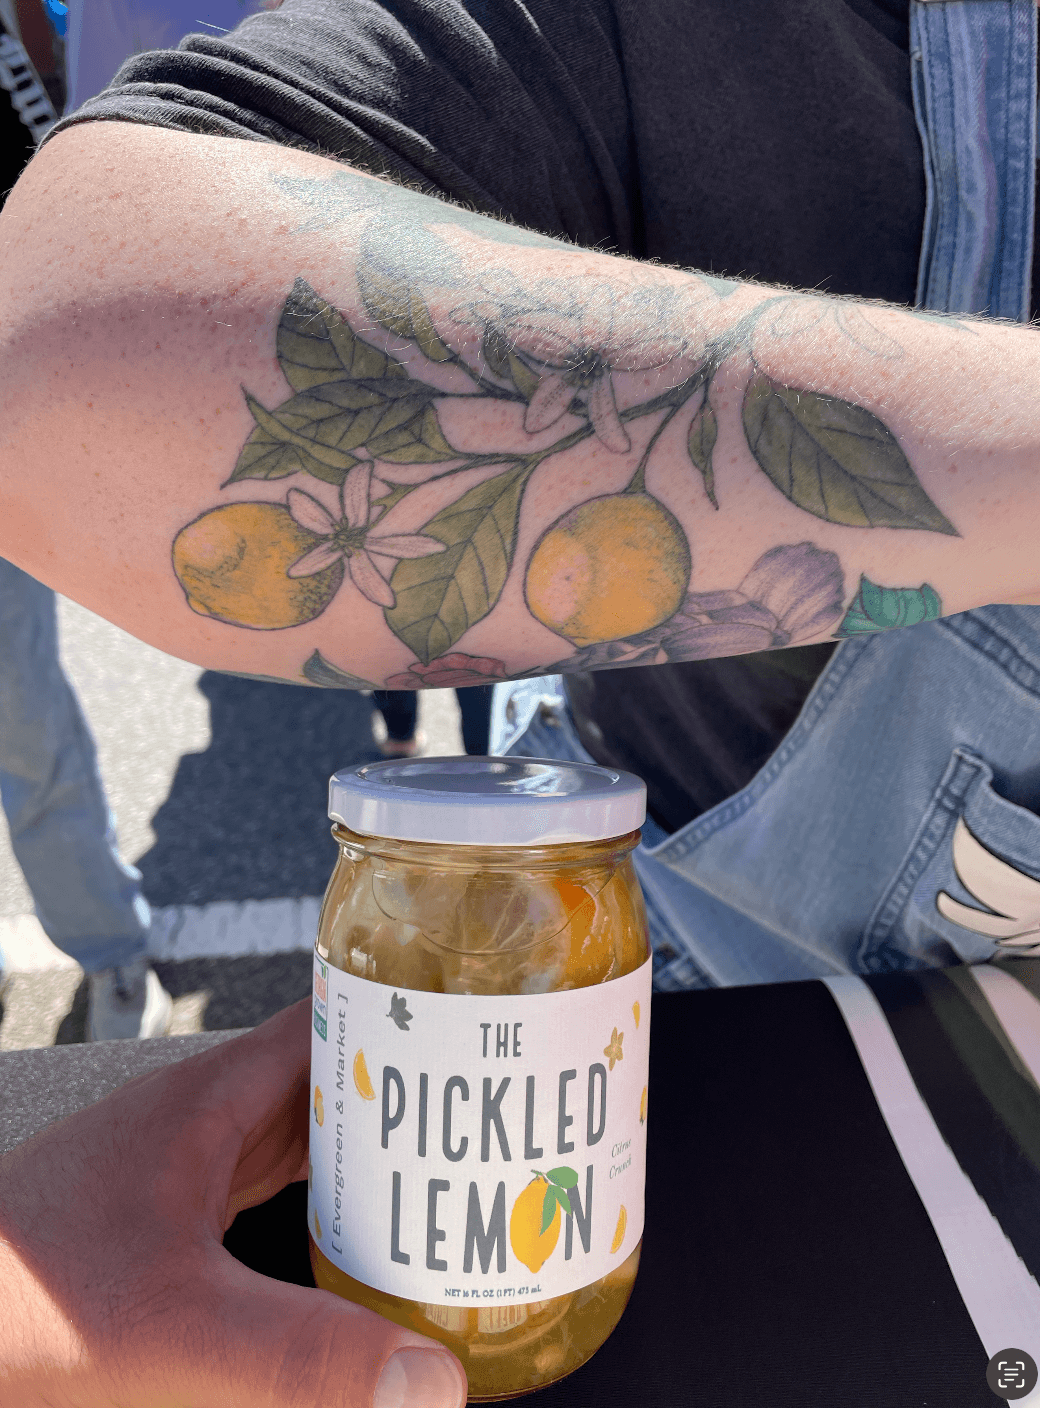 The Pickled Lemon